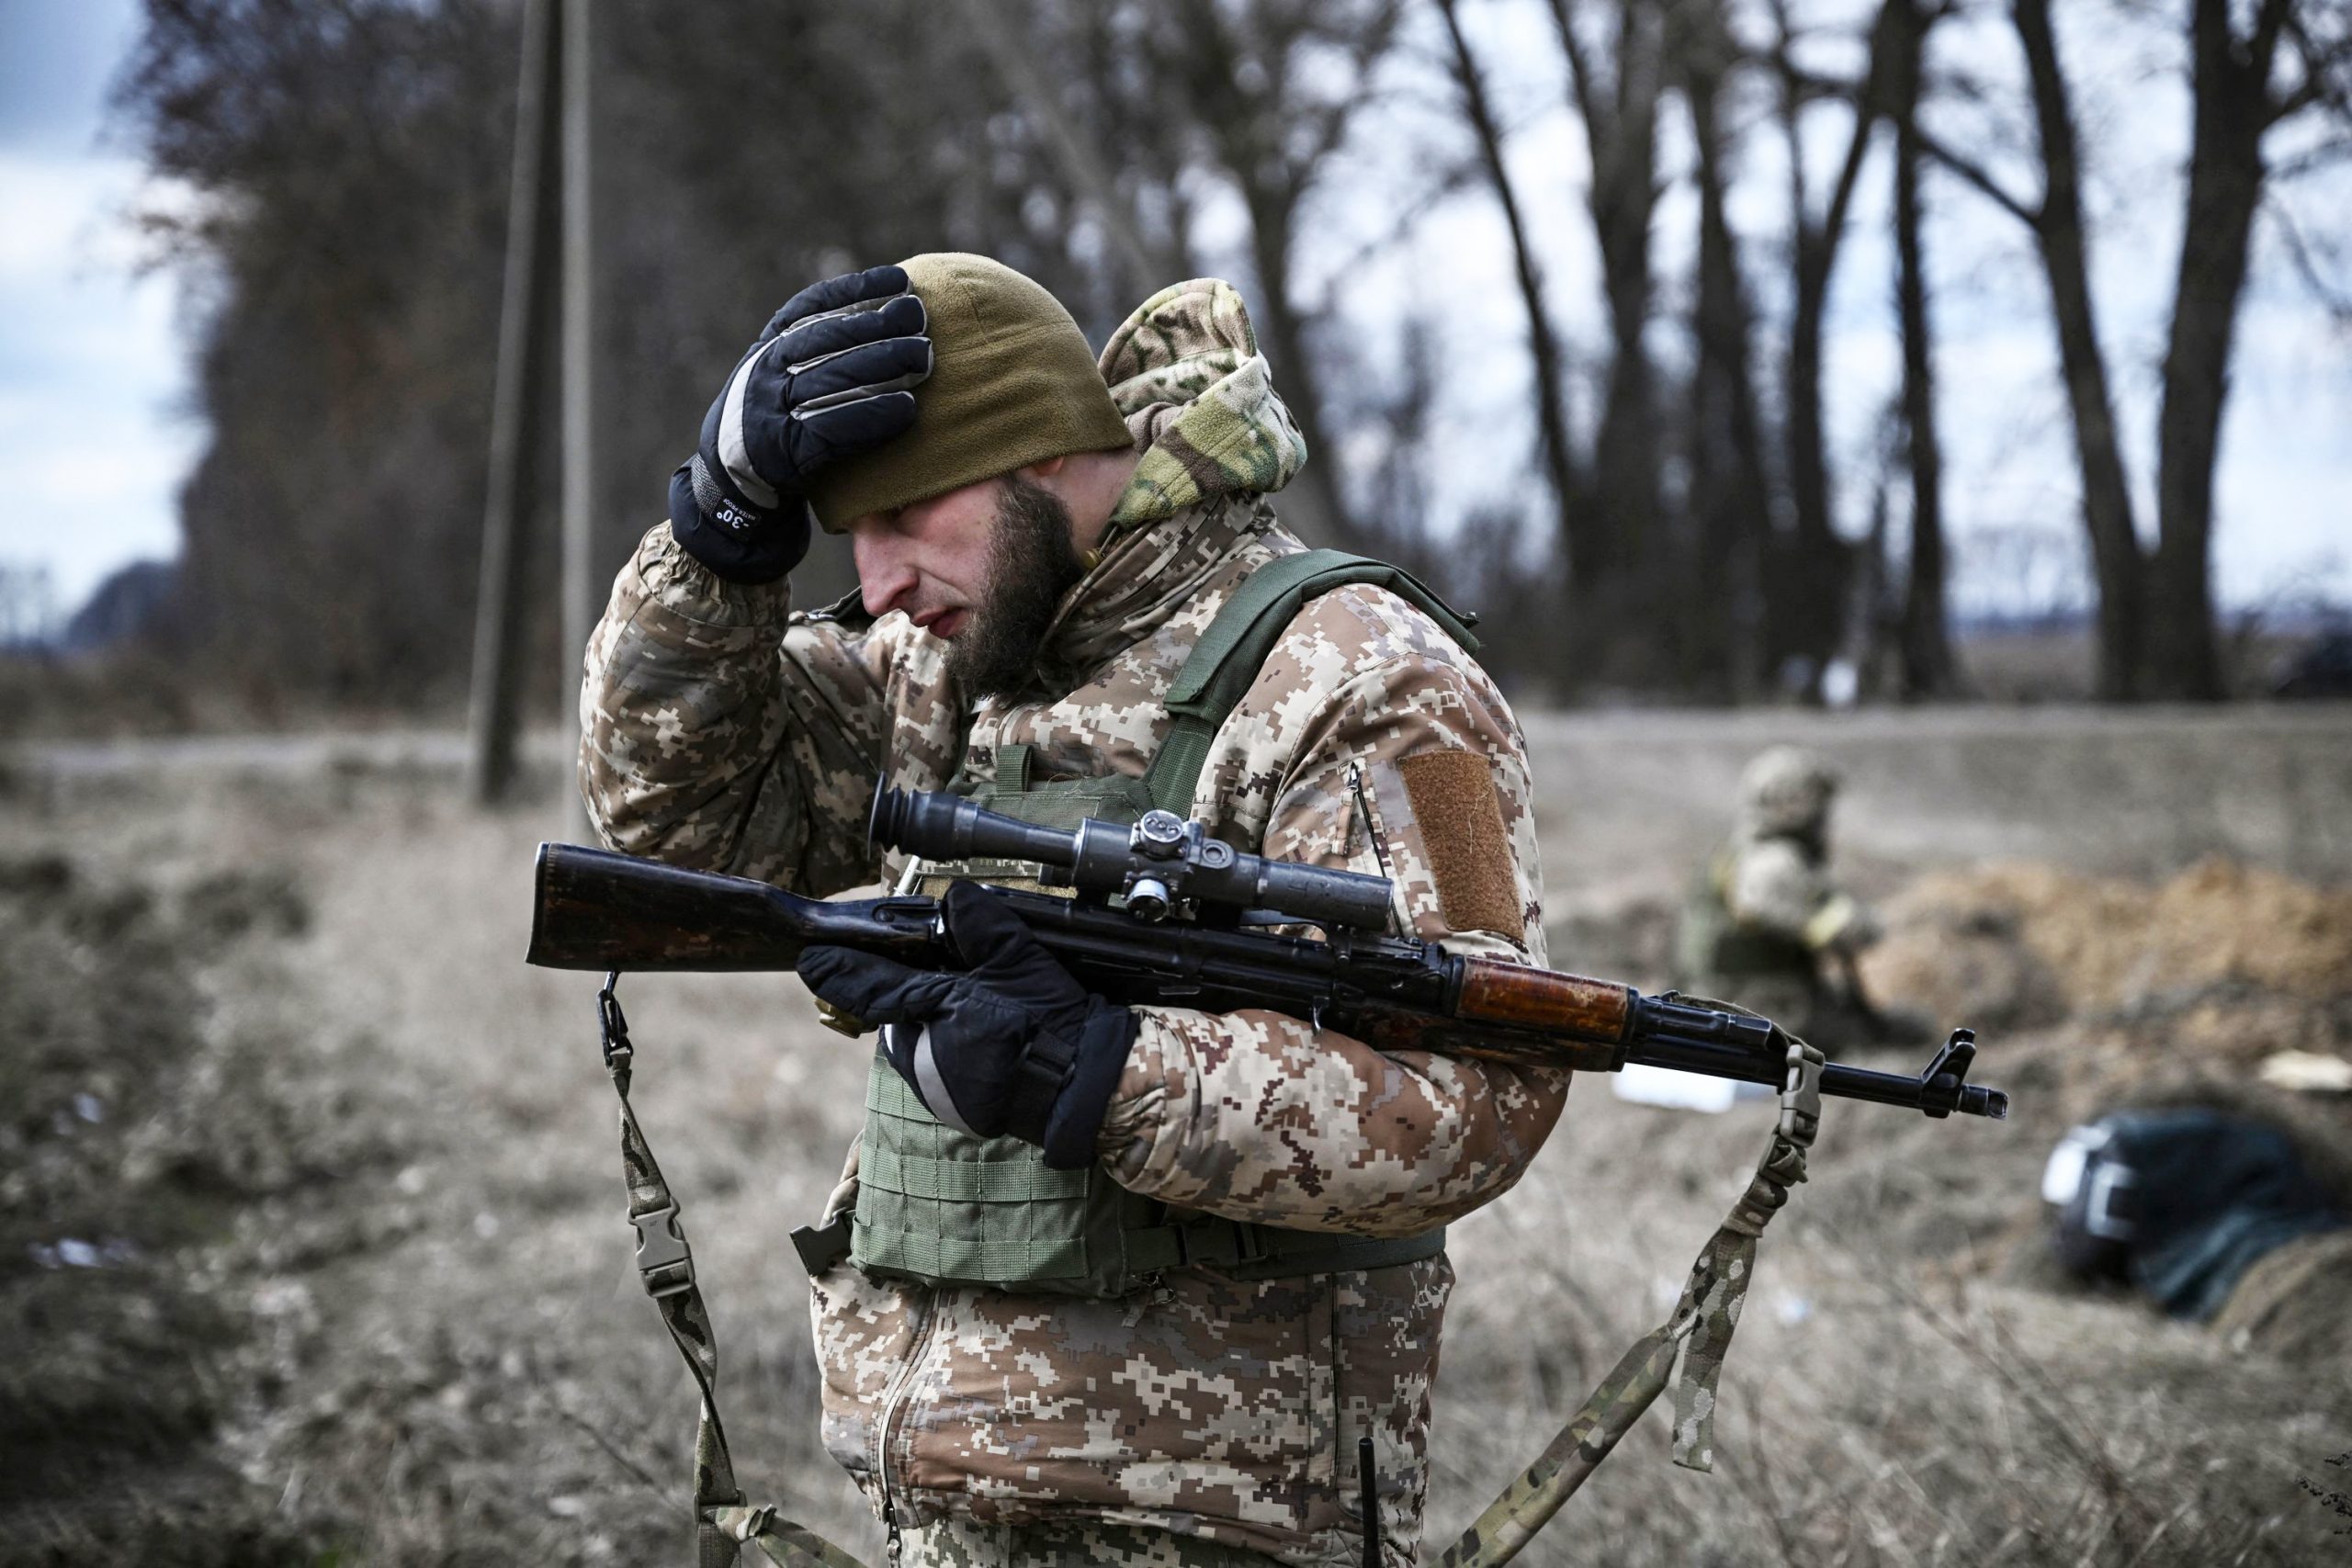 L'Ucraina e quelle armi mandate per difendersi dai russi che rischiano di finire nelle mani sbagliate